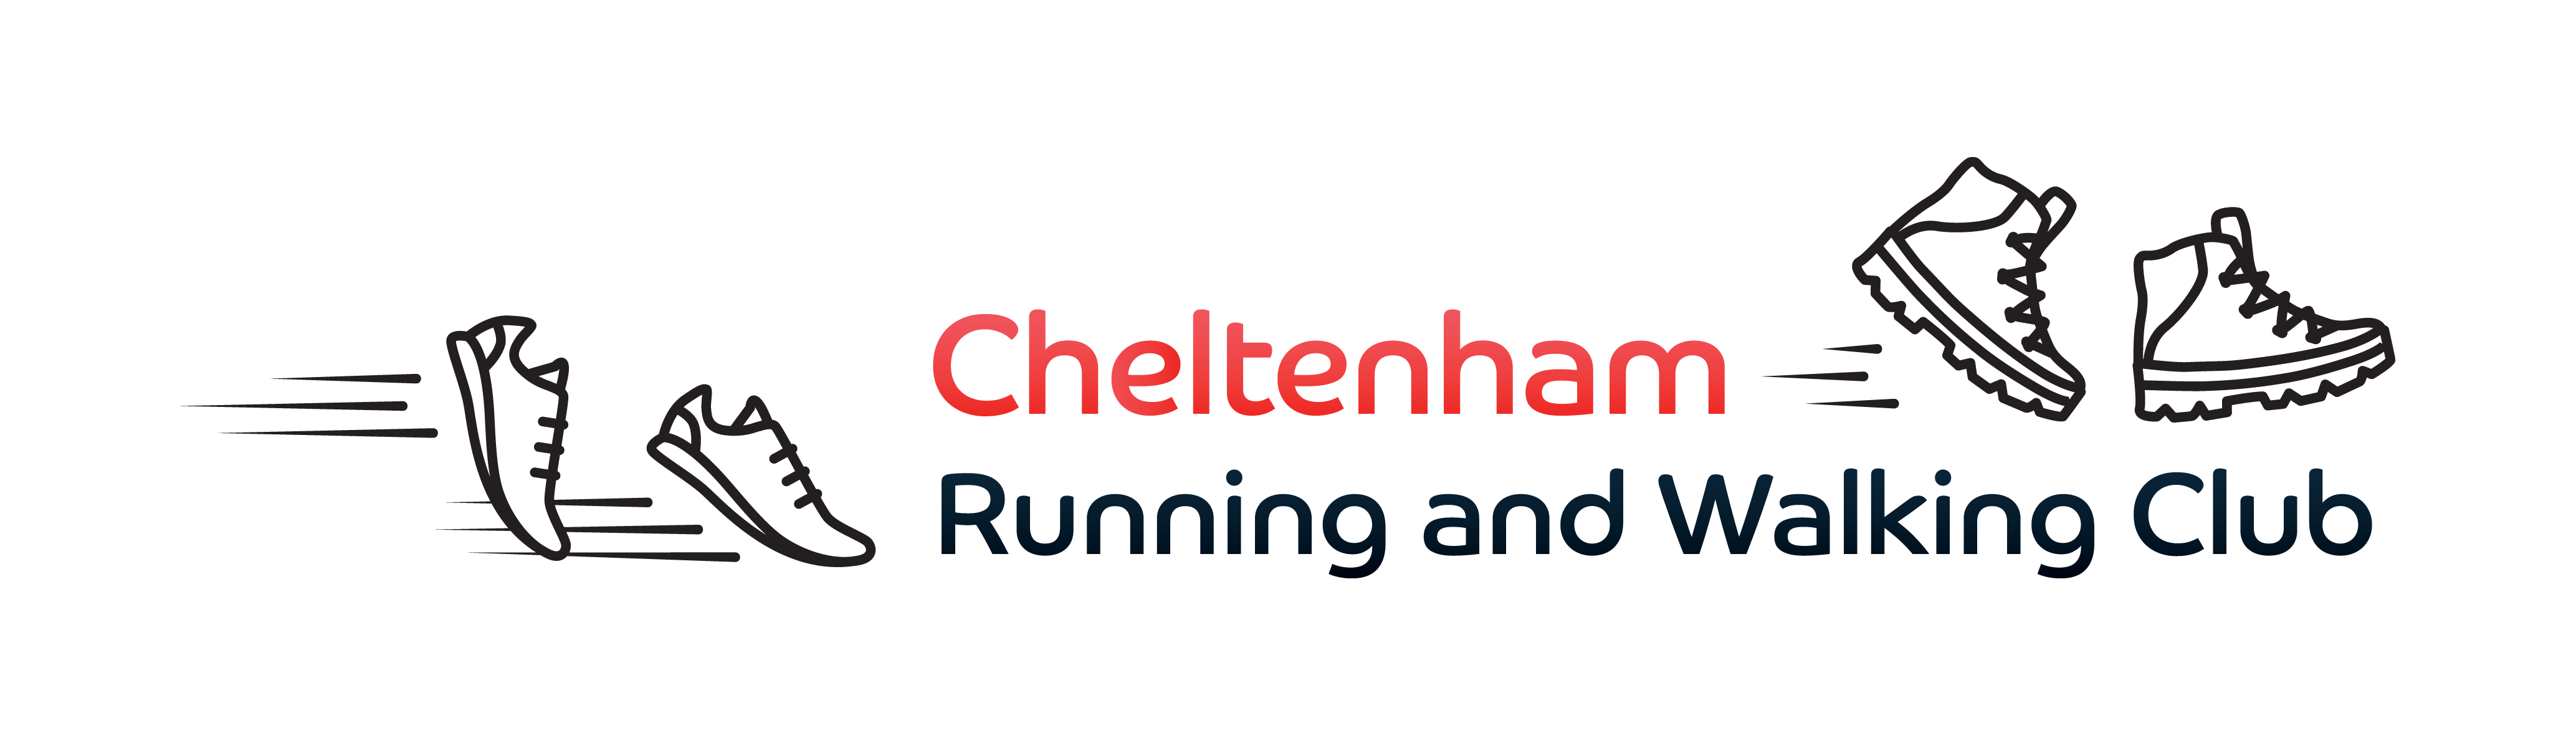 Cheltenham Running Club